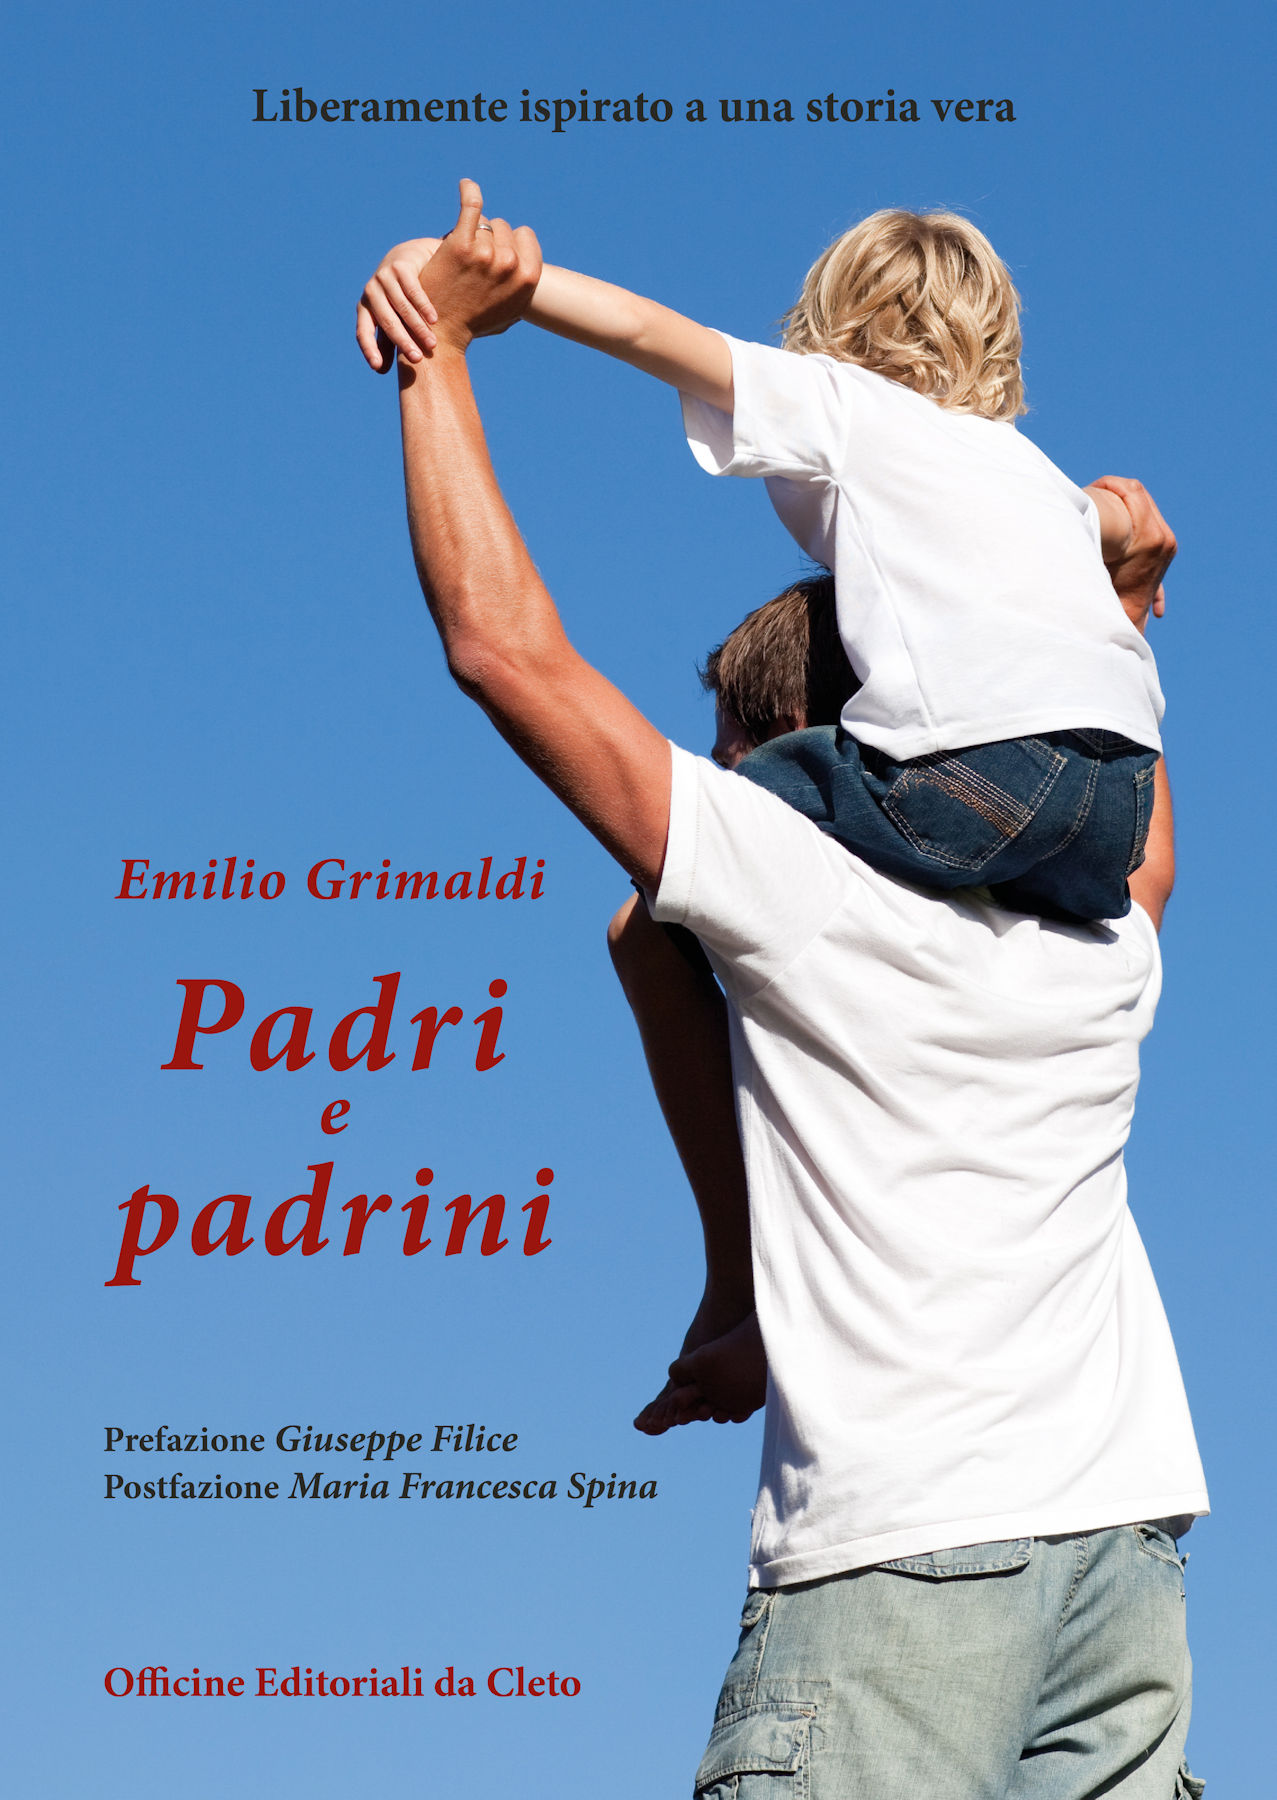 La copertina del libro dal titolo Padri e padrini di Emilio Grimaldi